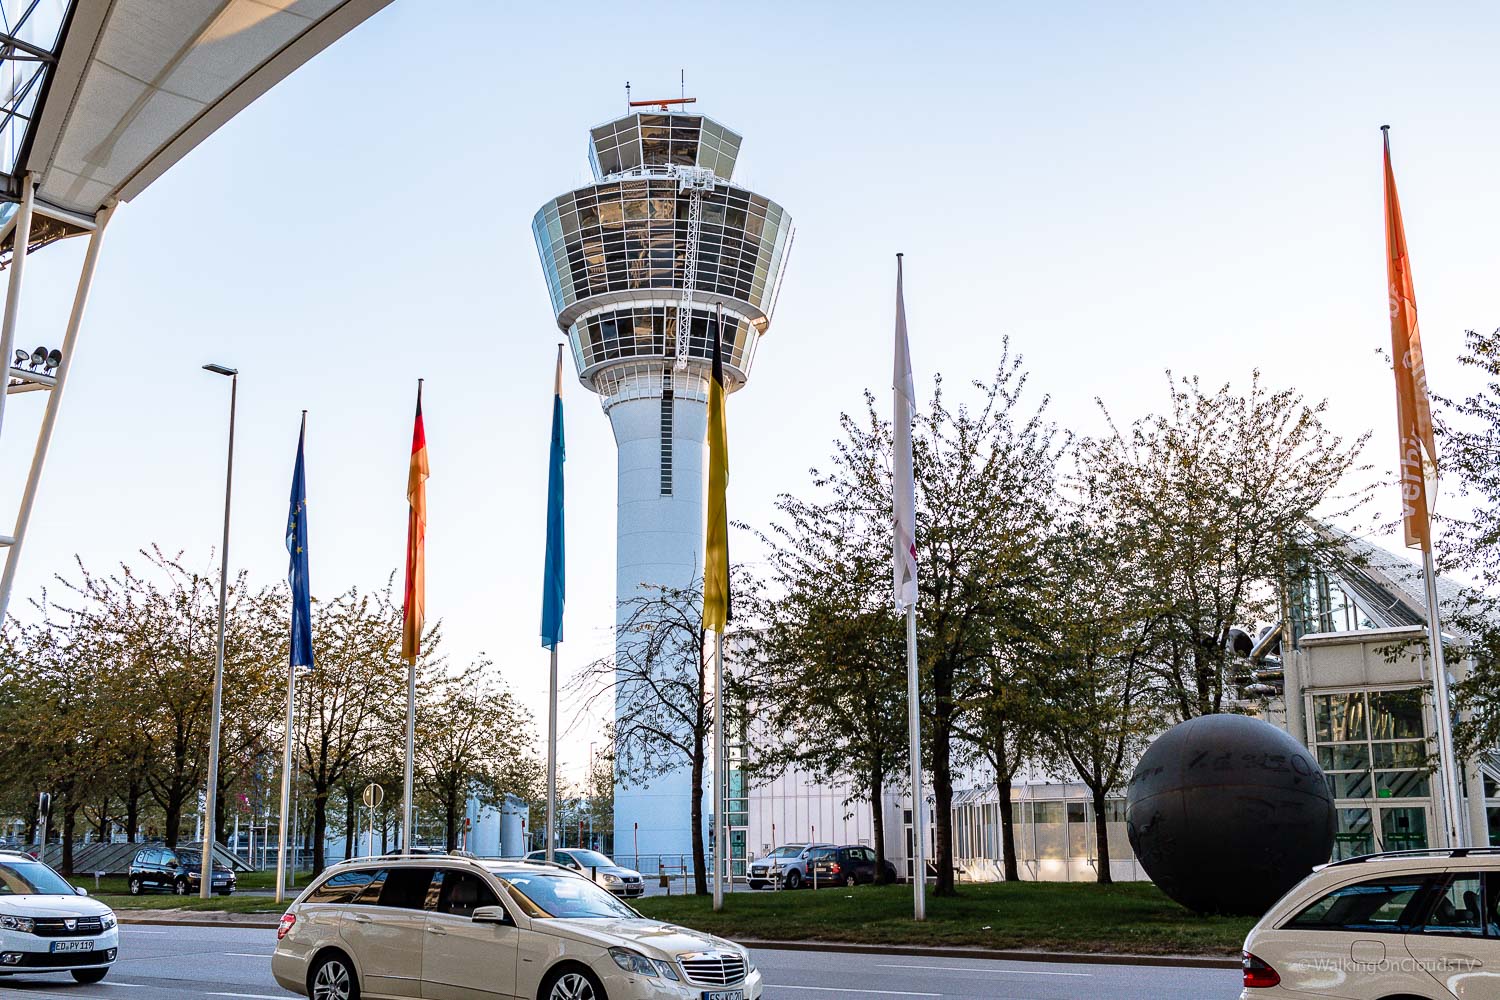 Hilton Hotel München Airport, ideal bei einem frühen Abflug, Urlaub, Geschäftsreise, Wellnessoase bei Zwischenstop, Restaurant Charles Lindbergh, Atrium, Fussball Doppelpass